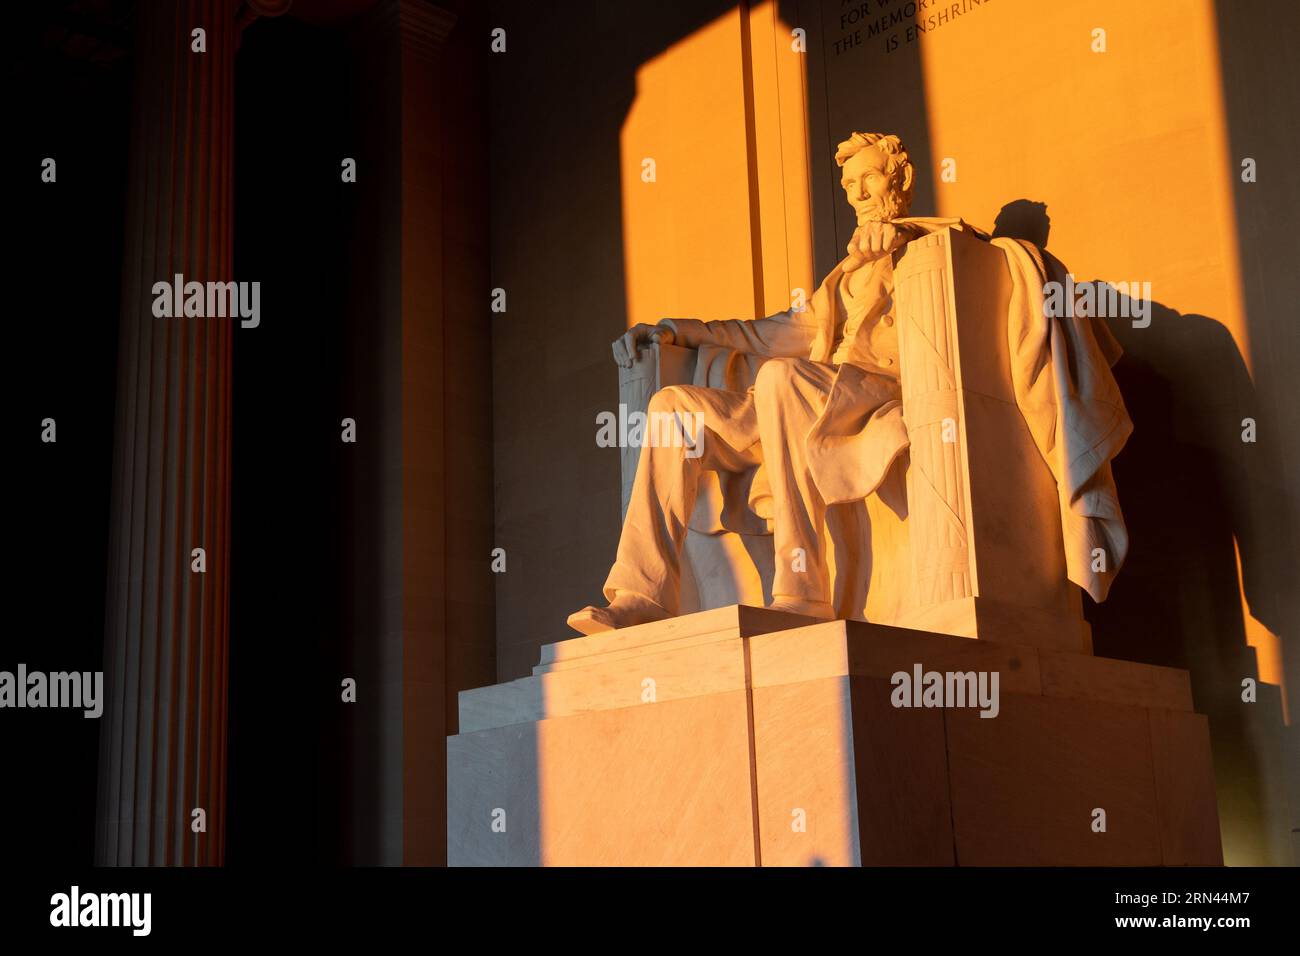 WASHINGTON DC, Vereinigte Staaten – das Lincoln Memorial, das Abraham Lincoln, dem 16. Präsidenten der Vereinigten Staaten, gewidmet ist, gilt als Wahrzeichen der National Mall. Es symbolisiert das Engagement der Nation für Einheit und Gleichheit, wobei Lincolns Figur den Vorsitz über den Reflecting Pool führt und Inschriften seiner berühmten Reden in seine Wände eingeätzt sind. Stockfoto